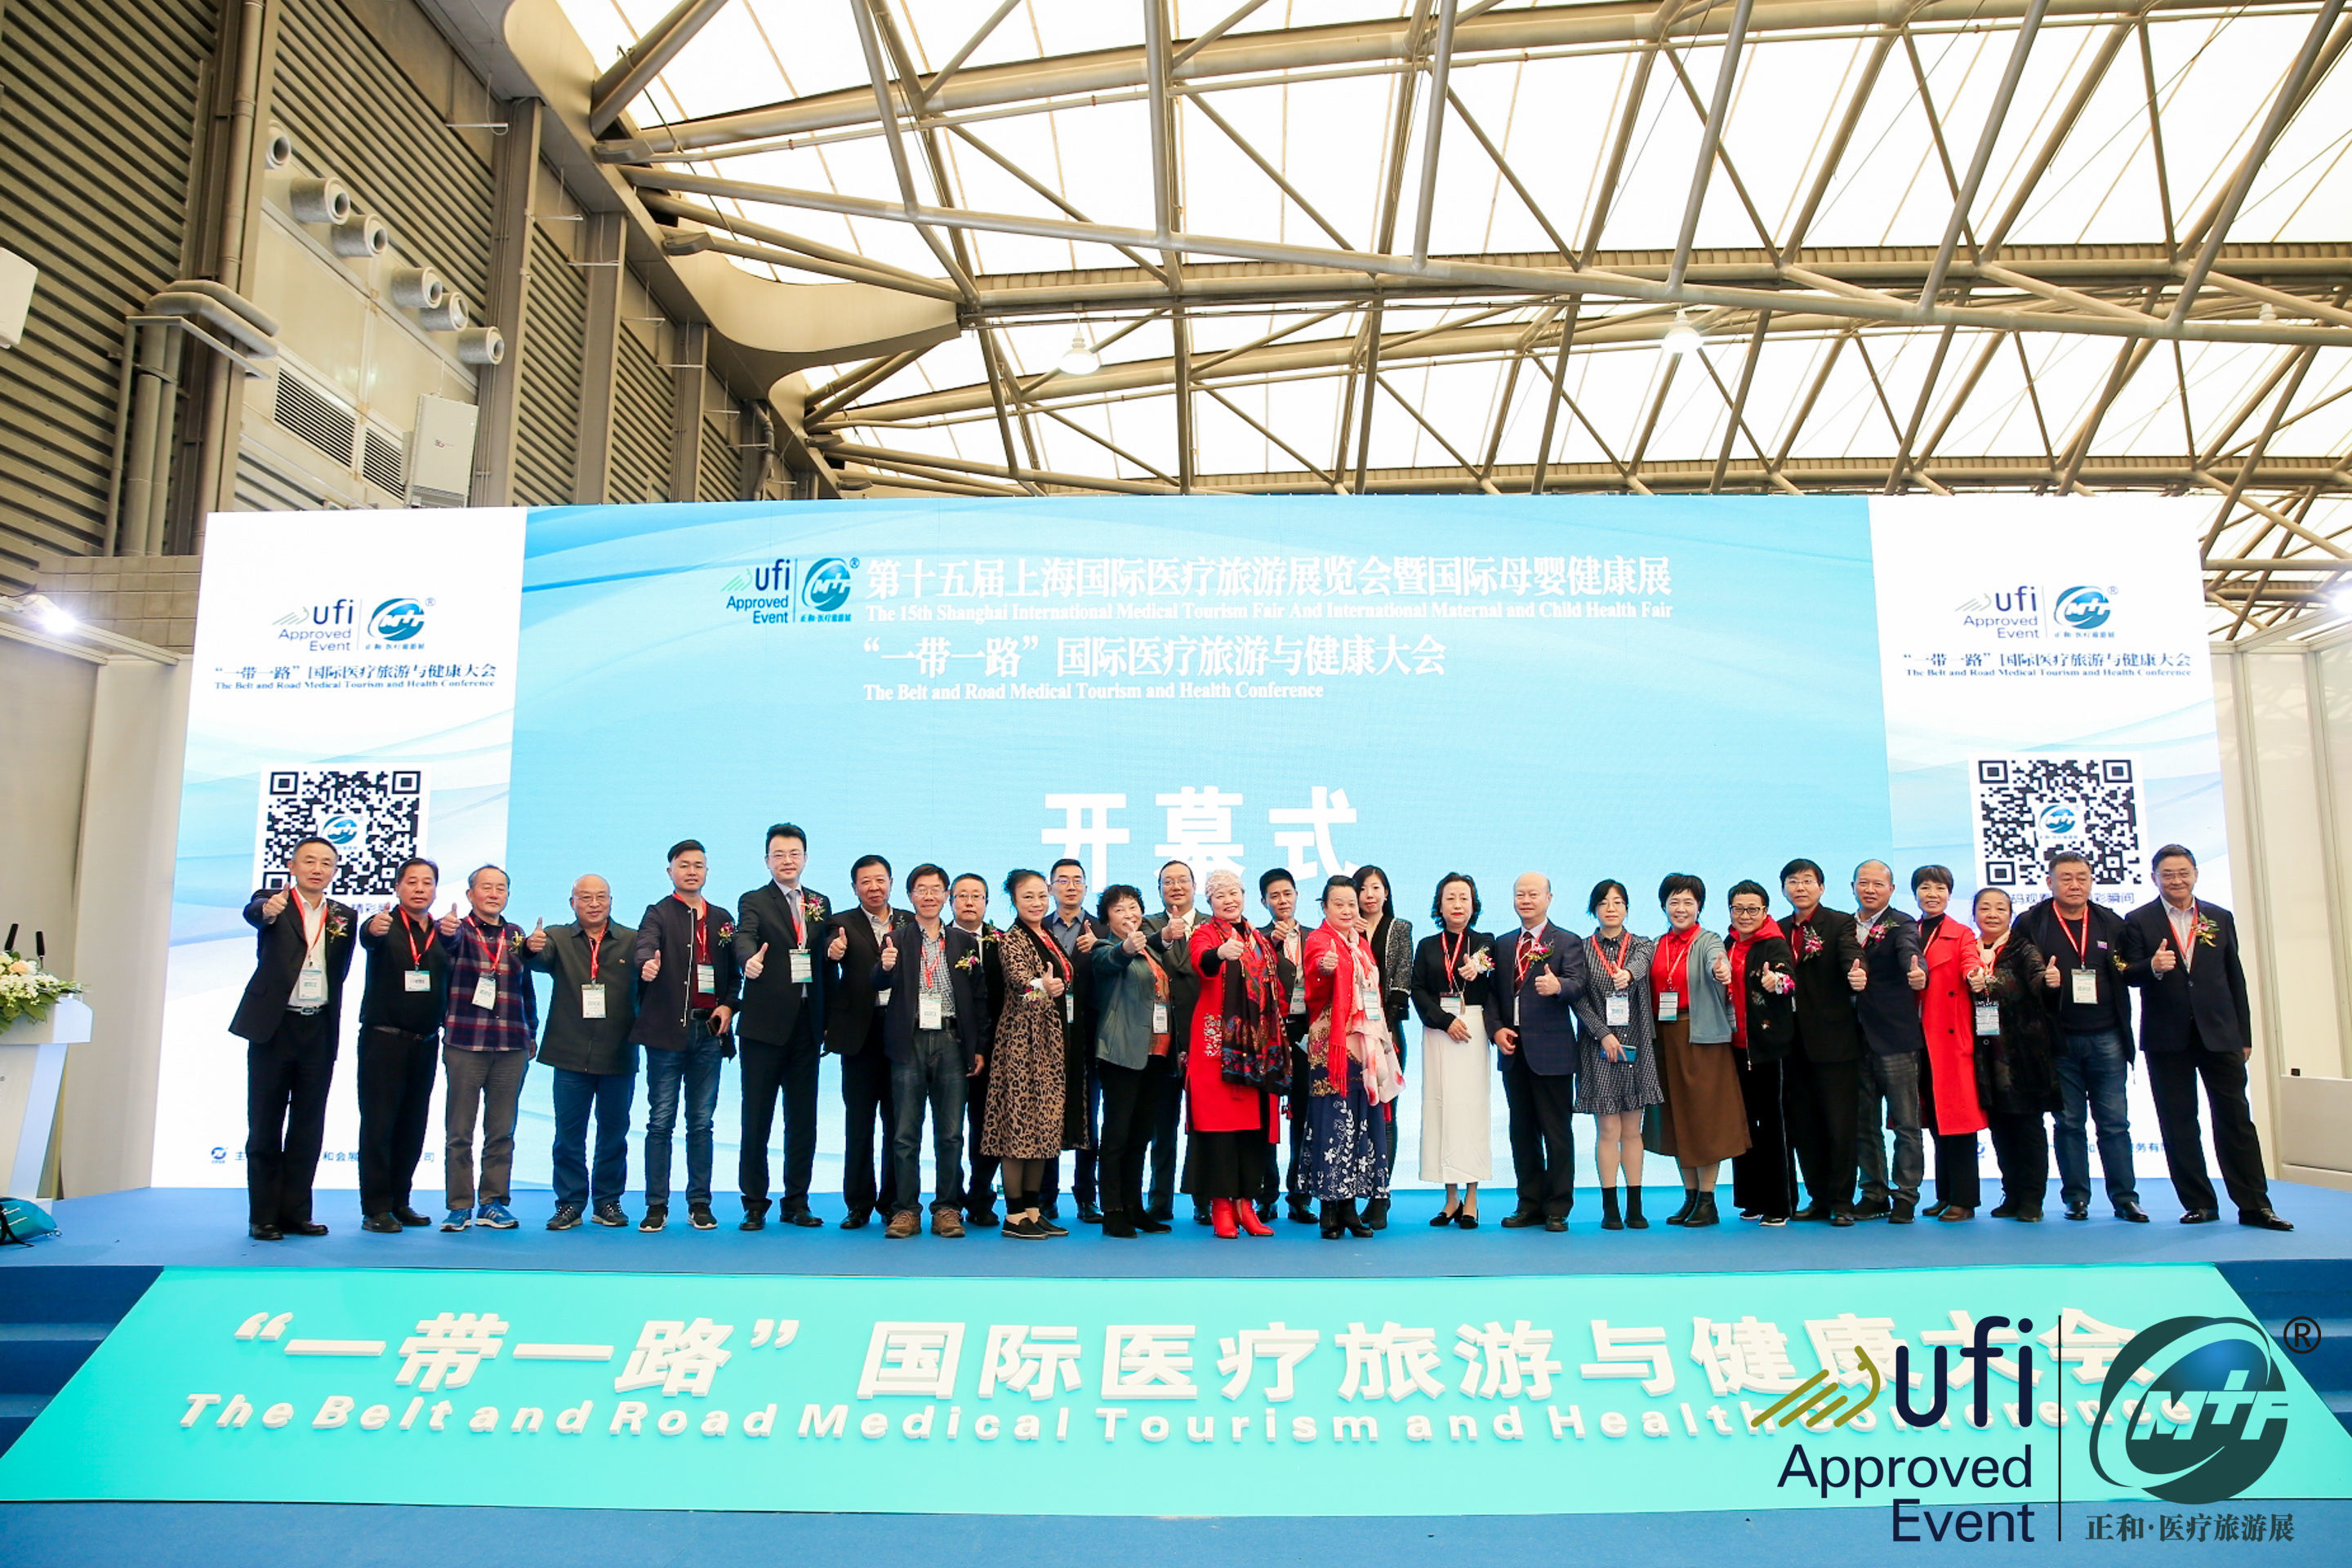 2020 The 15th Shanghai International Medical Tourism Fair